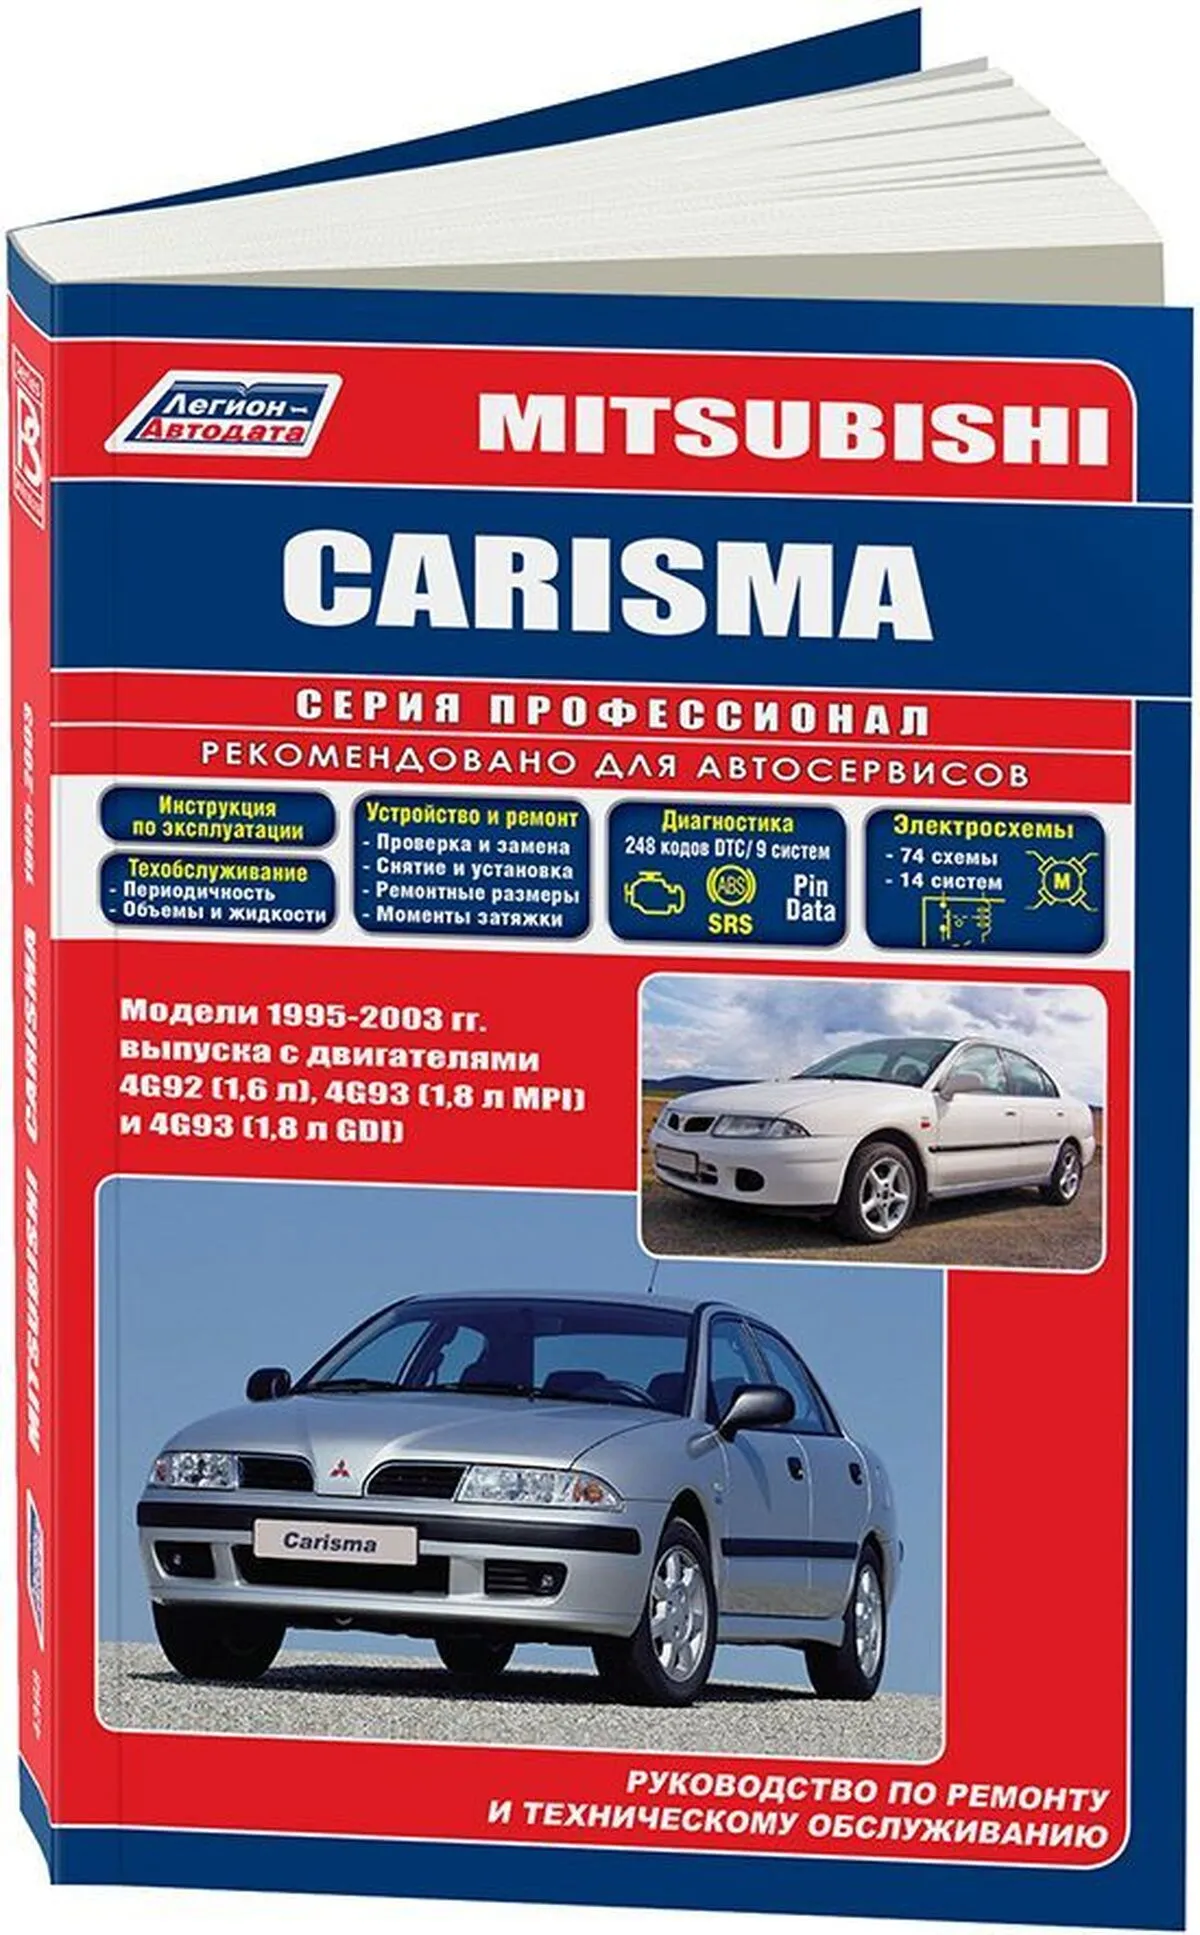 Книга: MITSUBISHI CARISMA (б) 1995-2003 г.в. рем., экспл., то | Легион-Aвтодата